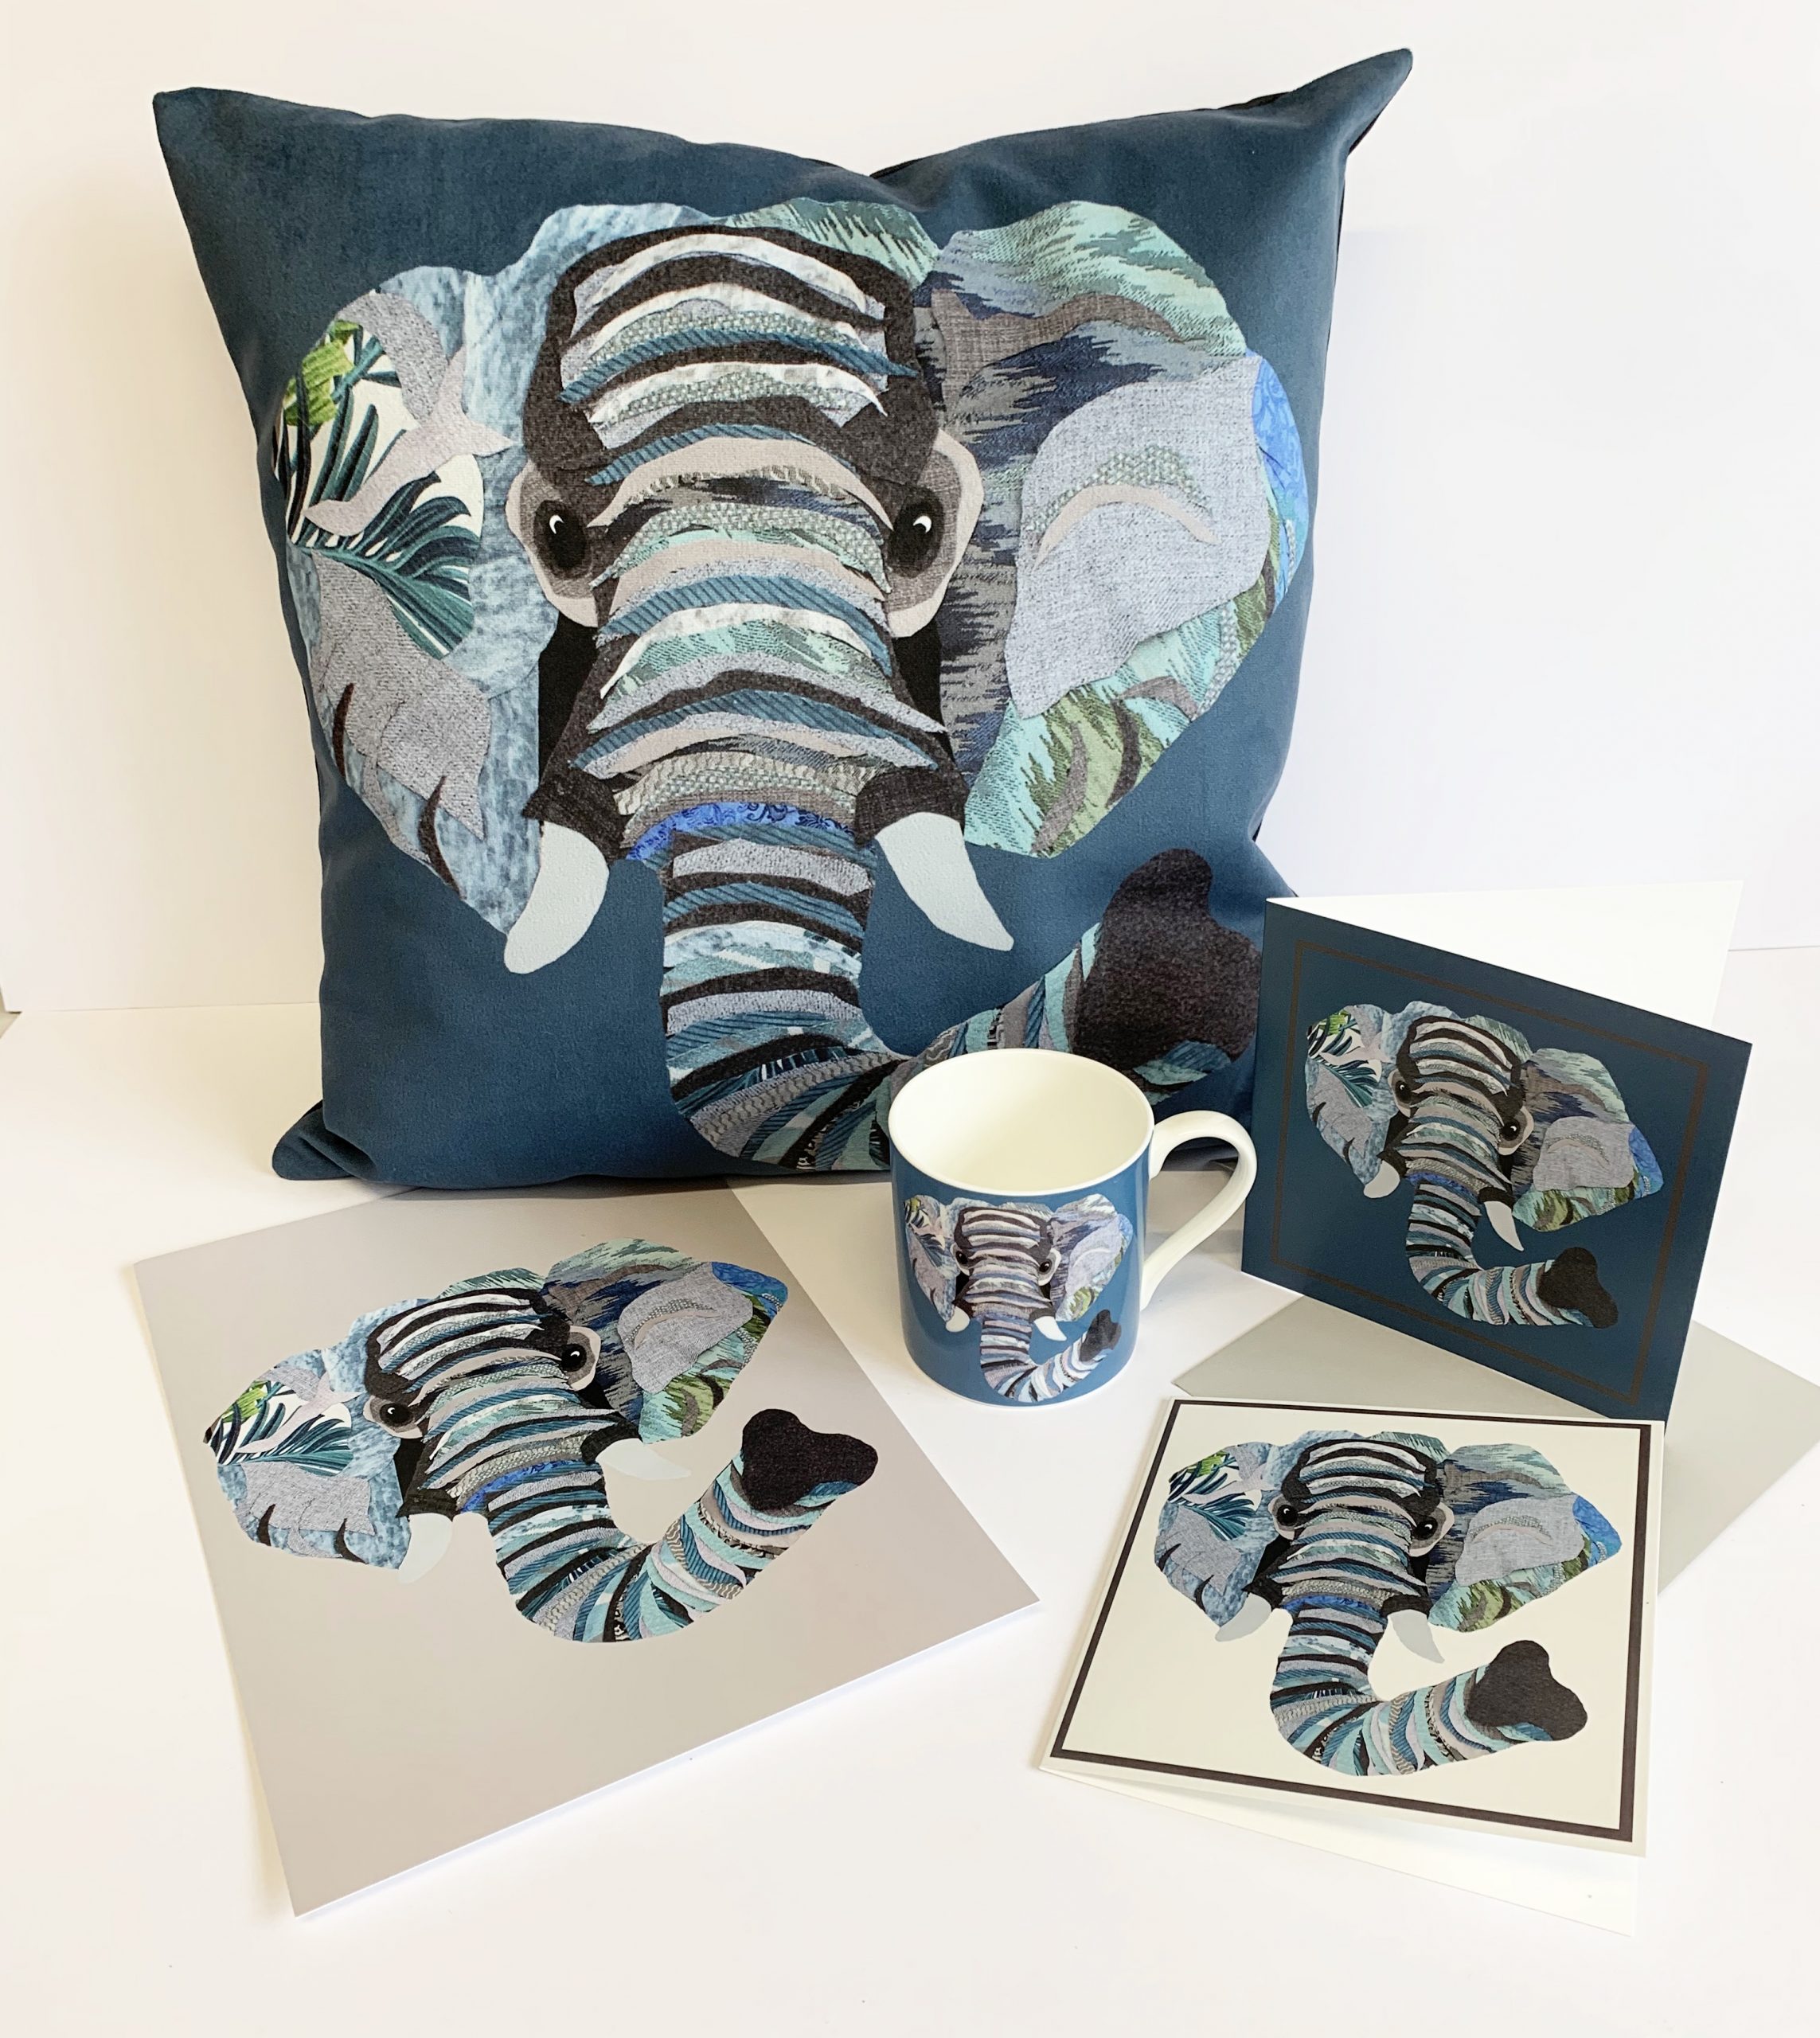 Elephant gift set